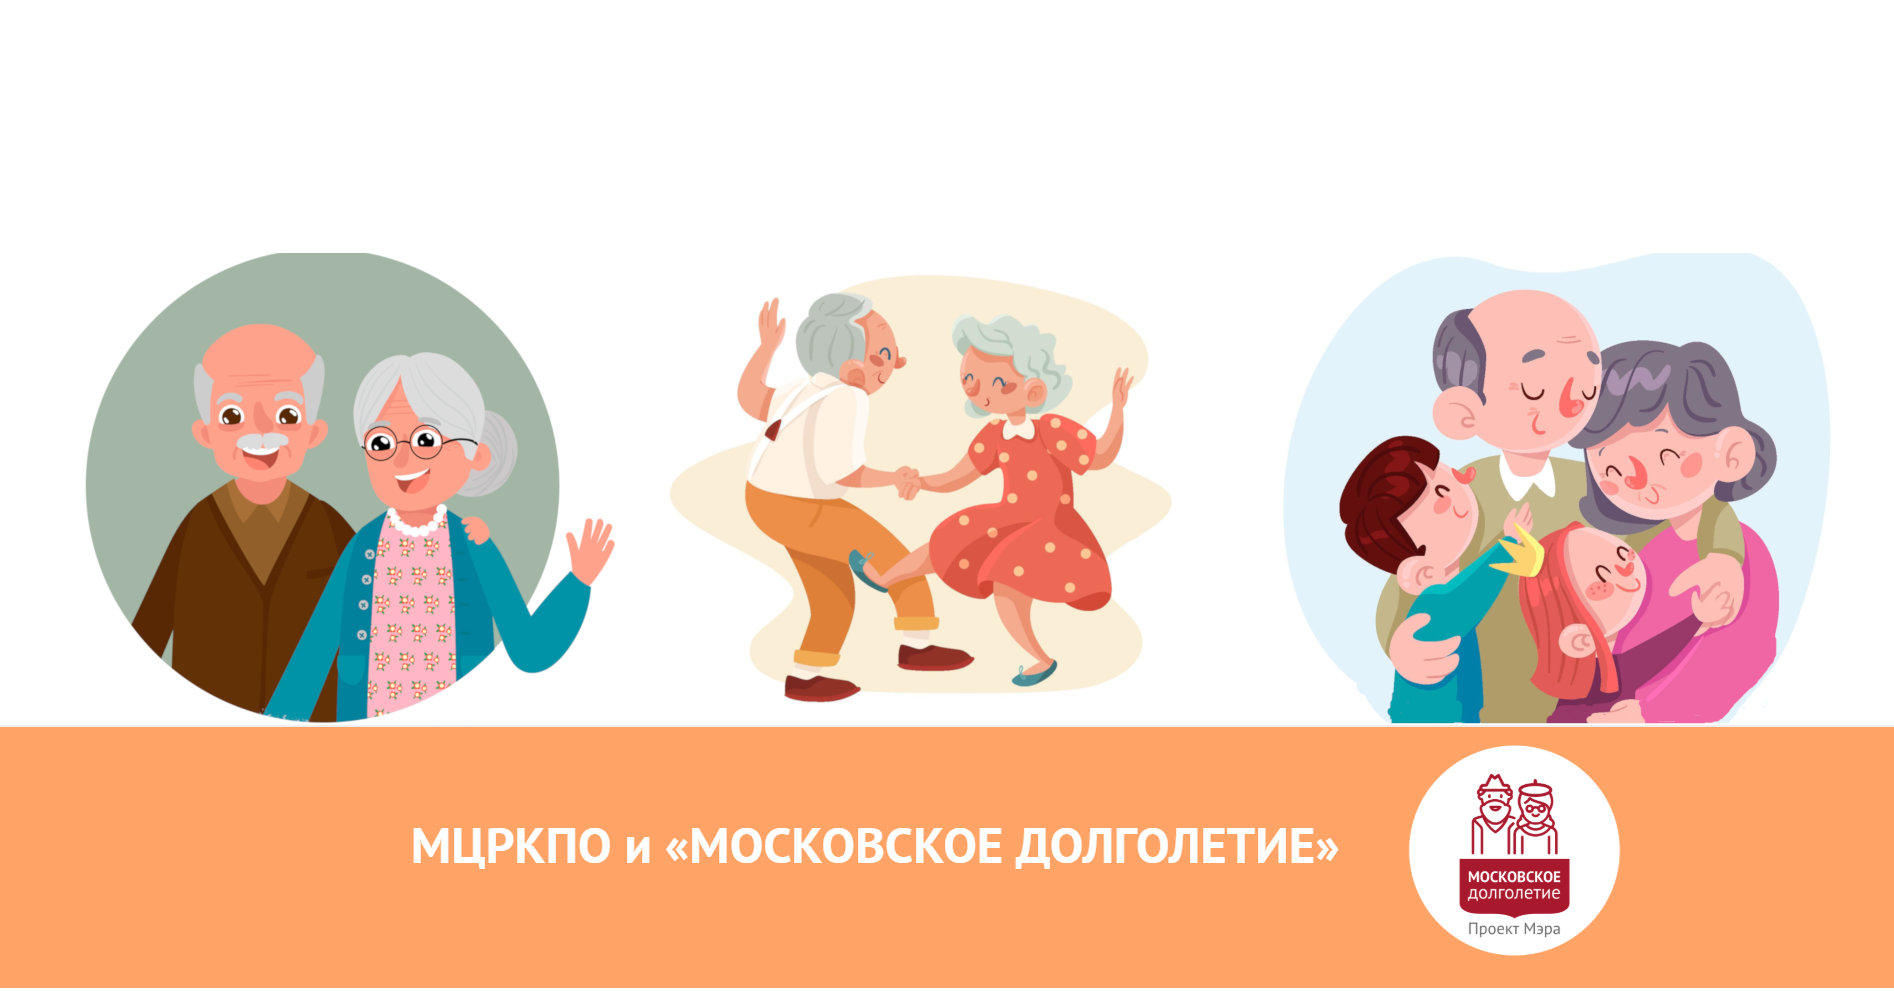 Сайт активное долголетие москва. Московское долголетие логотип. Активное долголетие рисунок. Московское долголетие рисунок. Активное долголетие плакат.